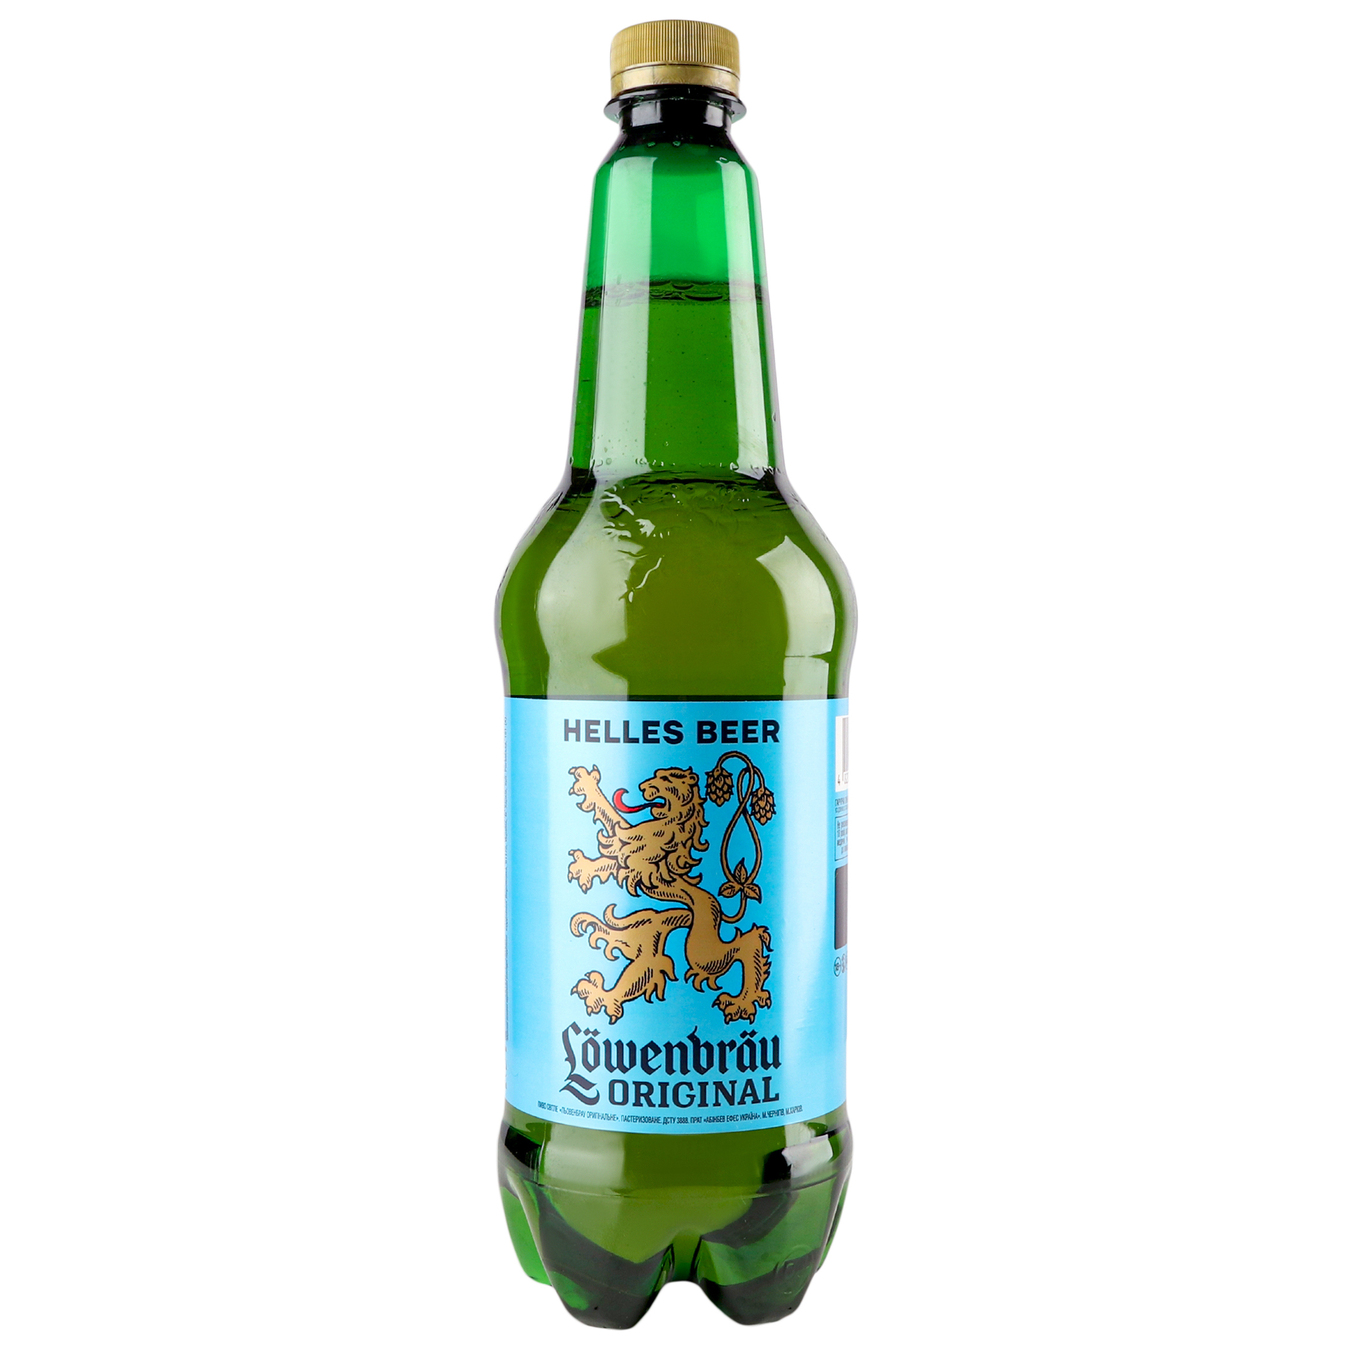 Пиво Lowenbrau Original пастеризованное светлое 5,1% 0,9л